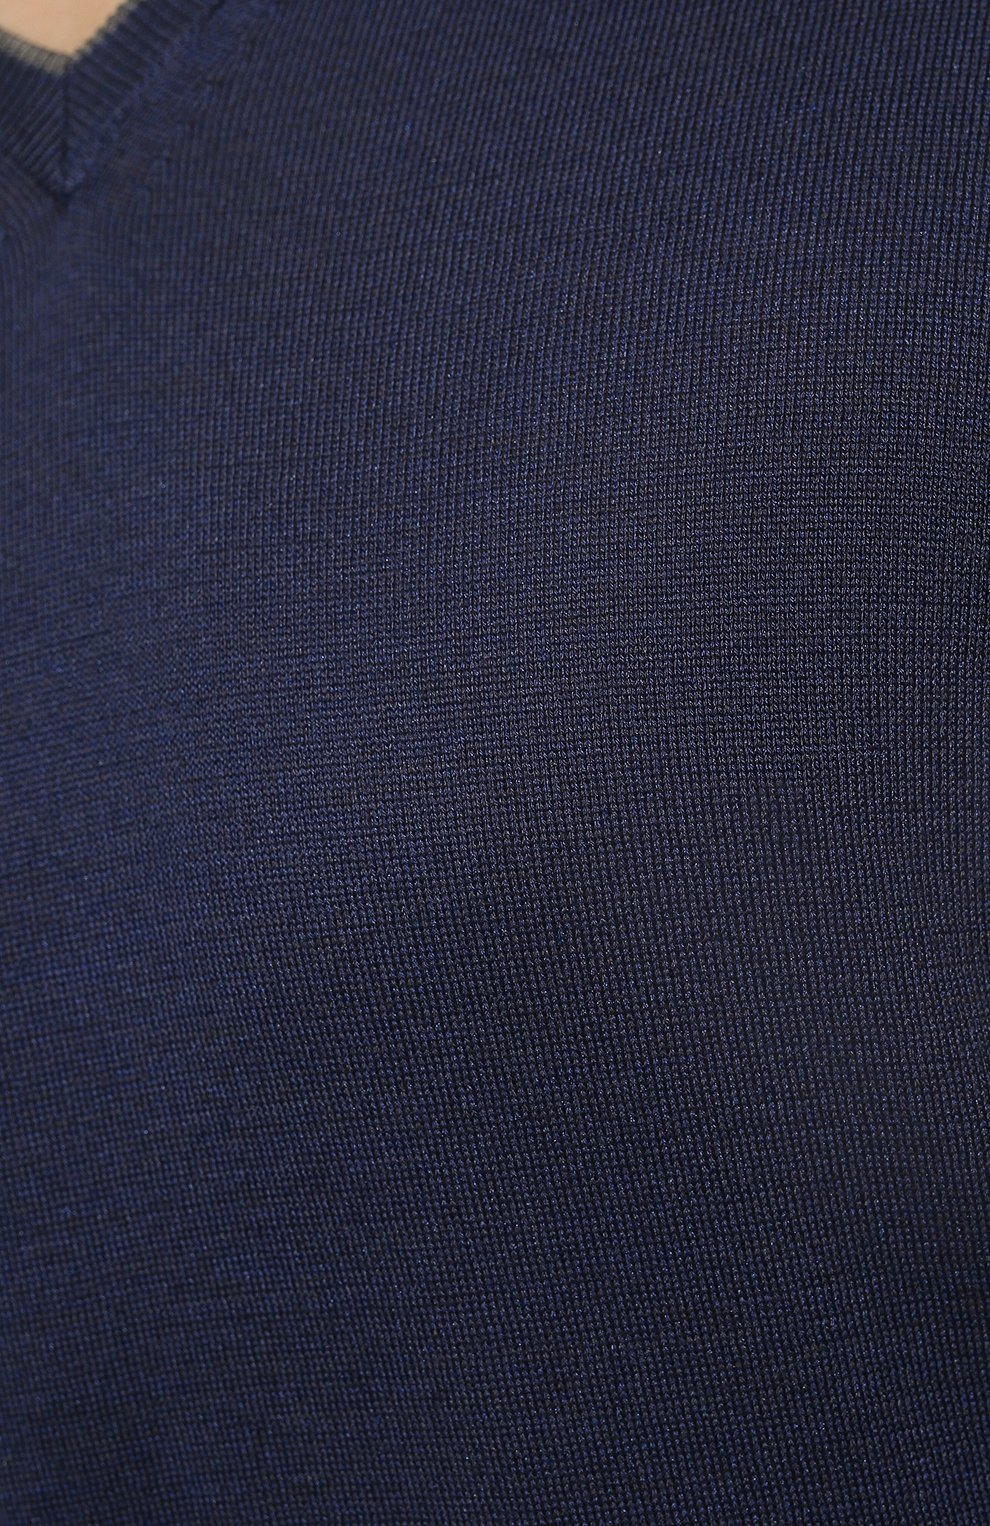 Мужской пуловер из шелка и хлопка GRAN SASSO темно-синего цвета, арт. 43115/16290 | Фото 5 (Материал внешний: Шелк, Хлопок; Рукава: Длинные; Принт: Без принта; Длина (для топов): Стандартные; Вырез: V-образный; Мужское Кросс-КТ: Пуловеры; Стили: Кэжуэл)